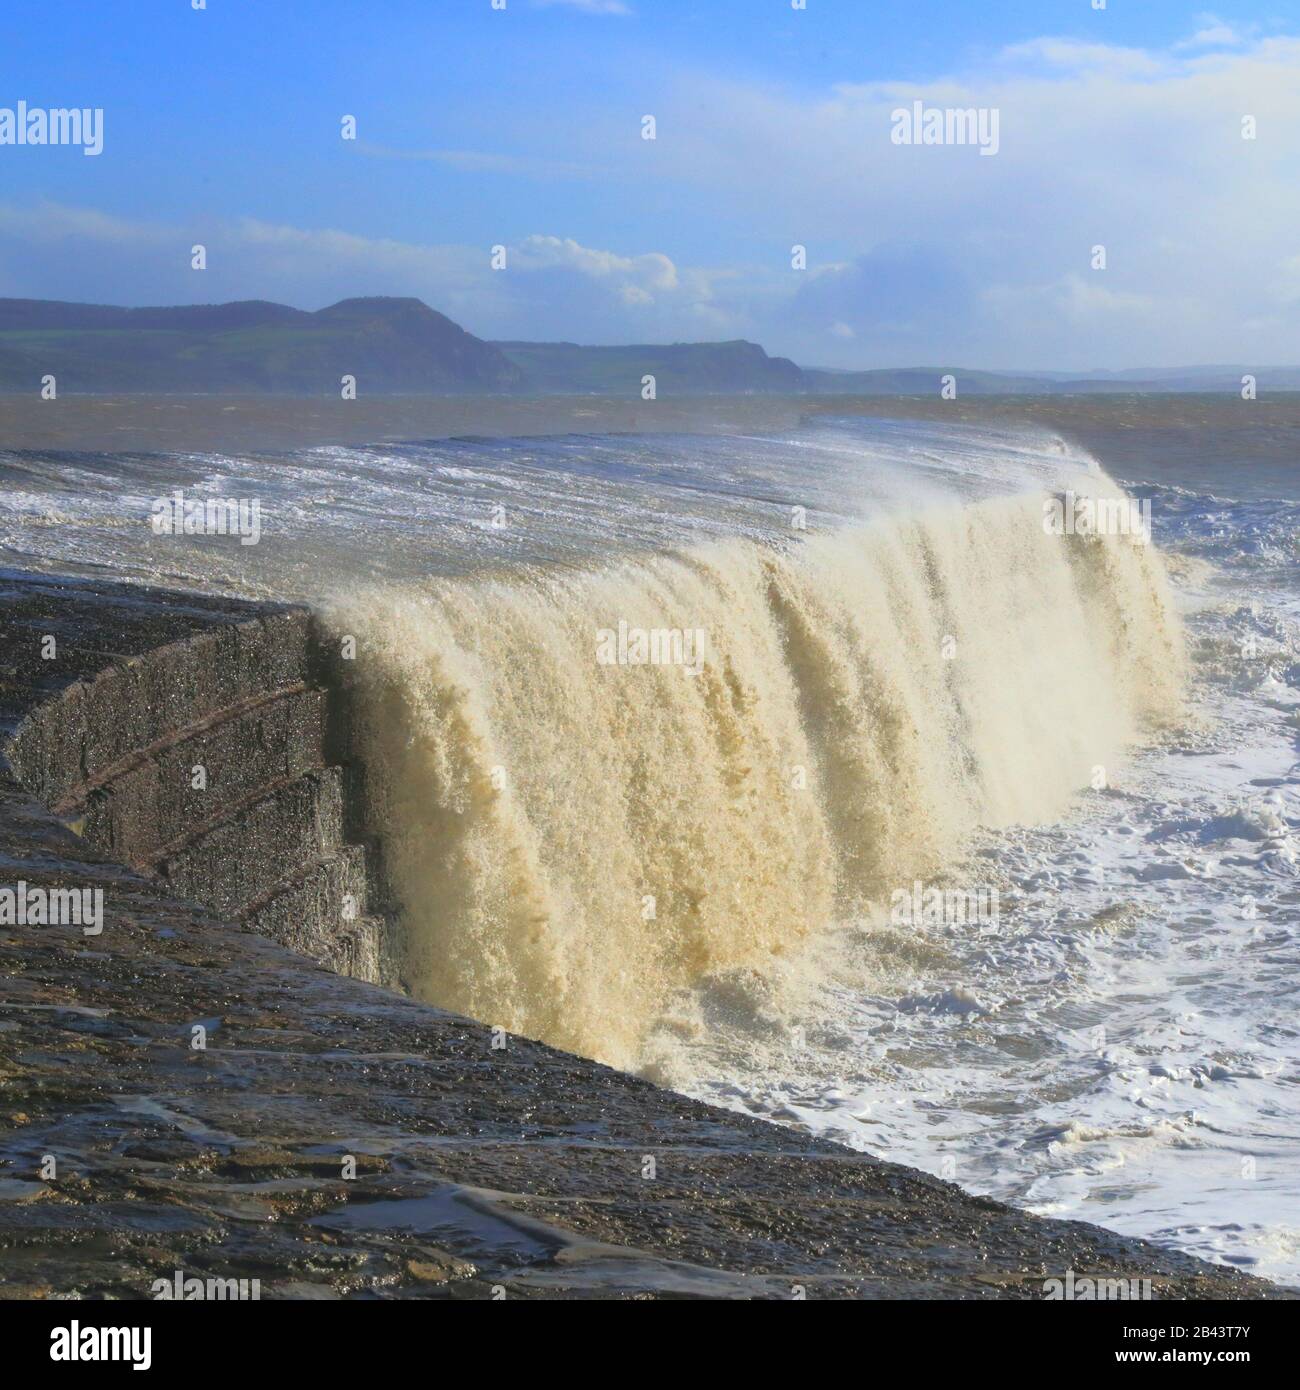 Große Welle, die bei Flut und starkem Wind auf Den Cobb spritzt Stockfoto